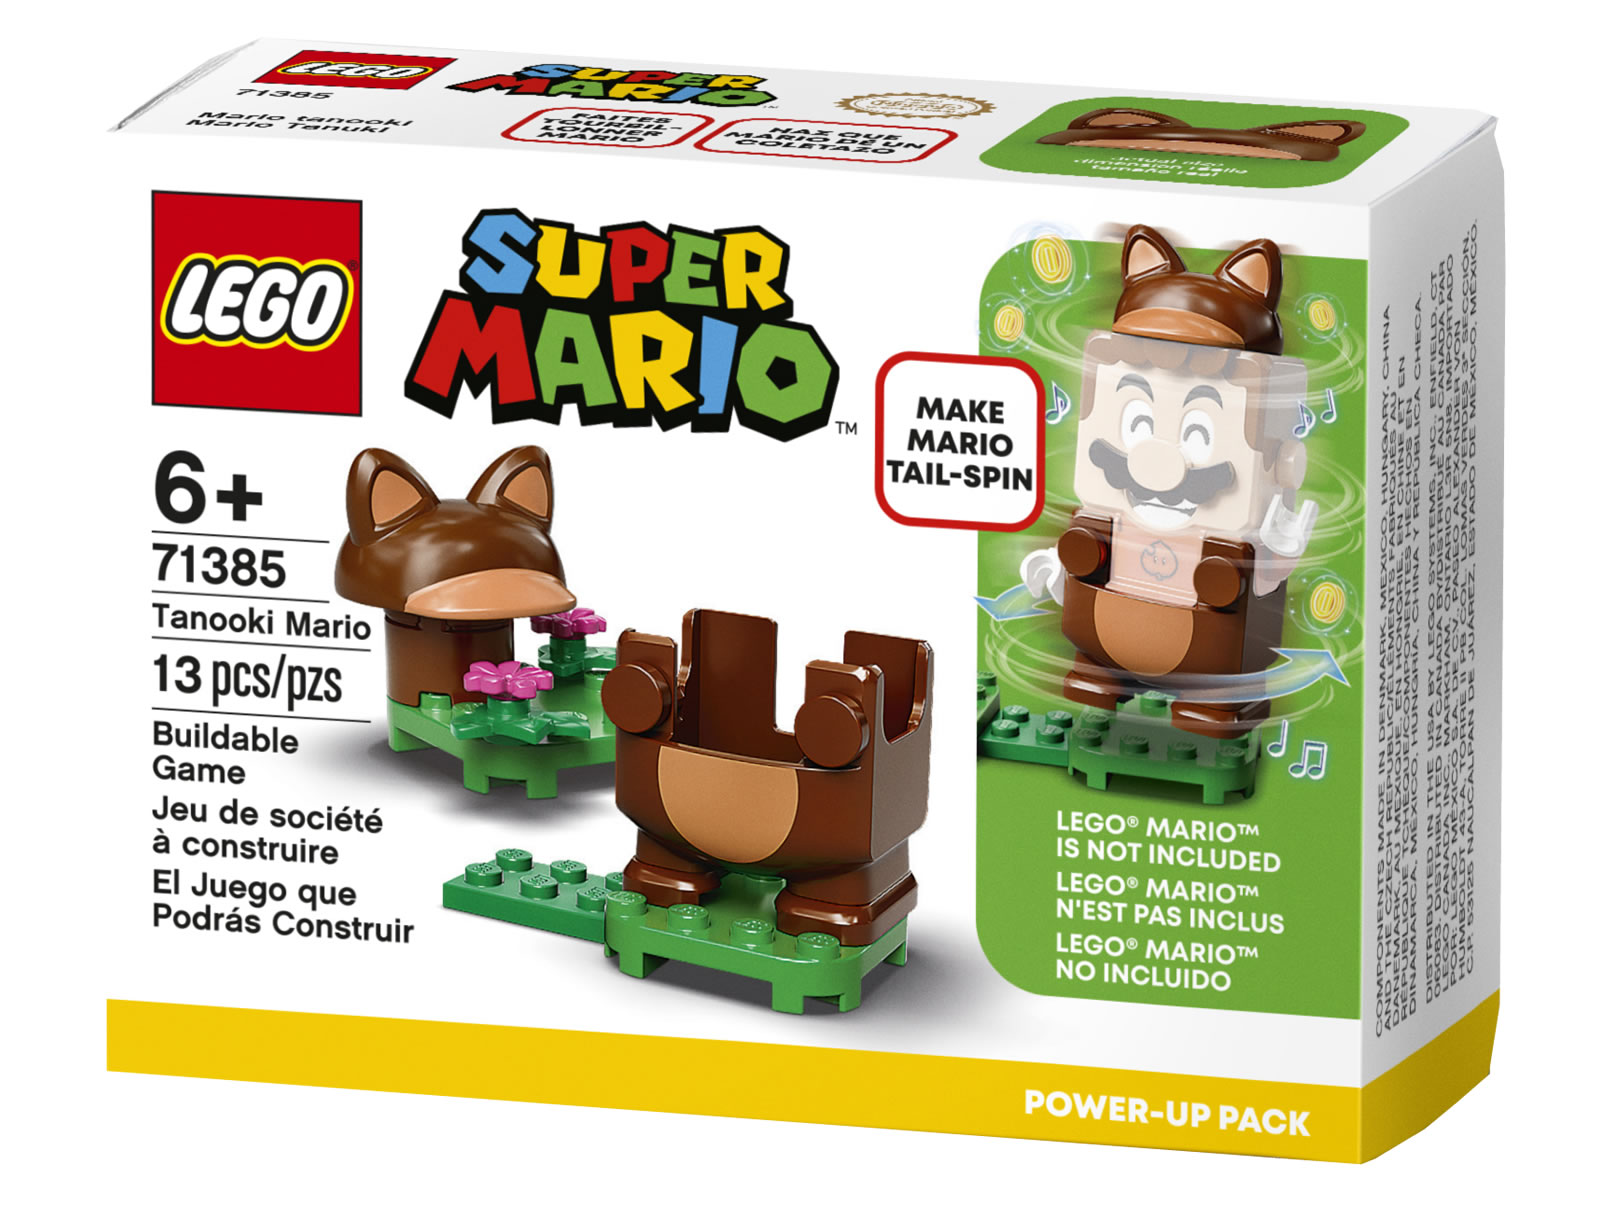 LEGO Super Mario 71385 Tanooki Mario Power-Up Pack